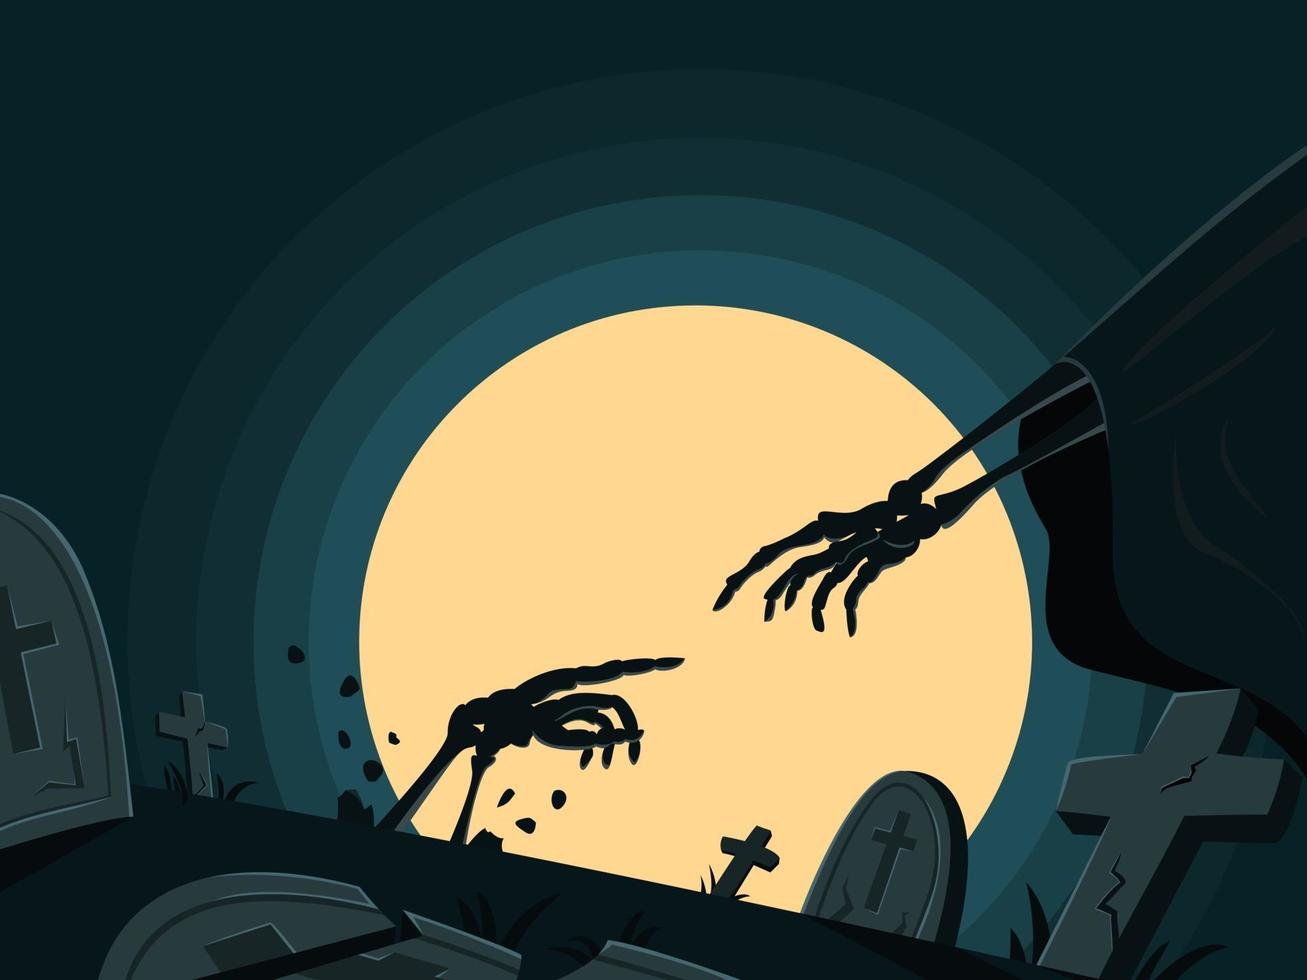 Skeleton is Resurrecting in Tomb for Halloween Wallpaper. vector